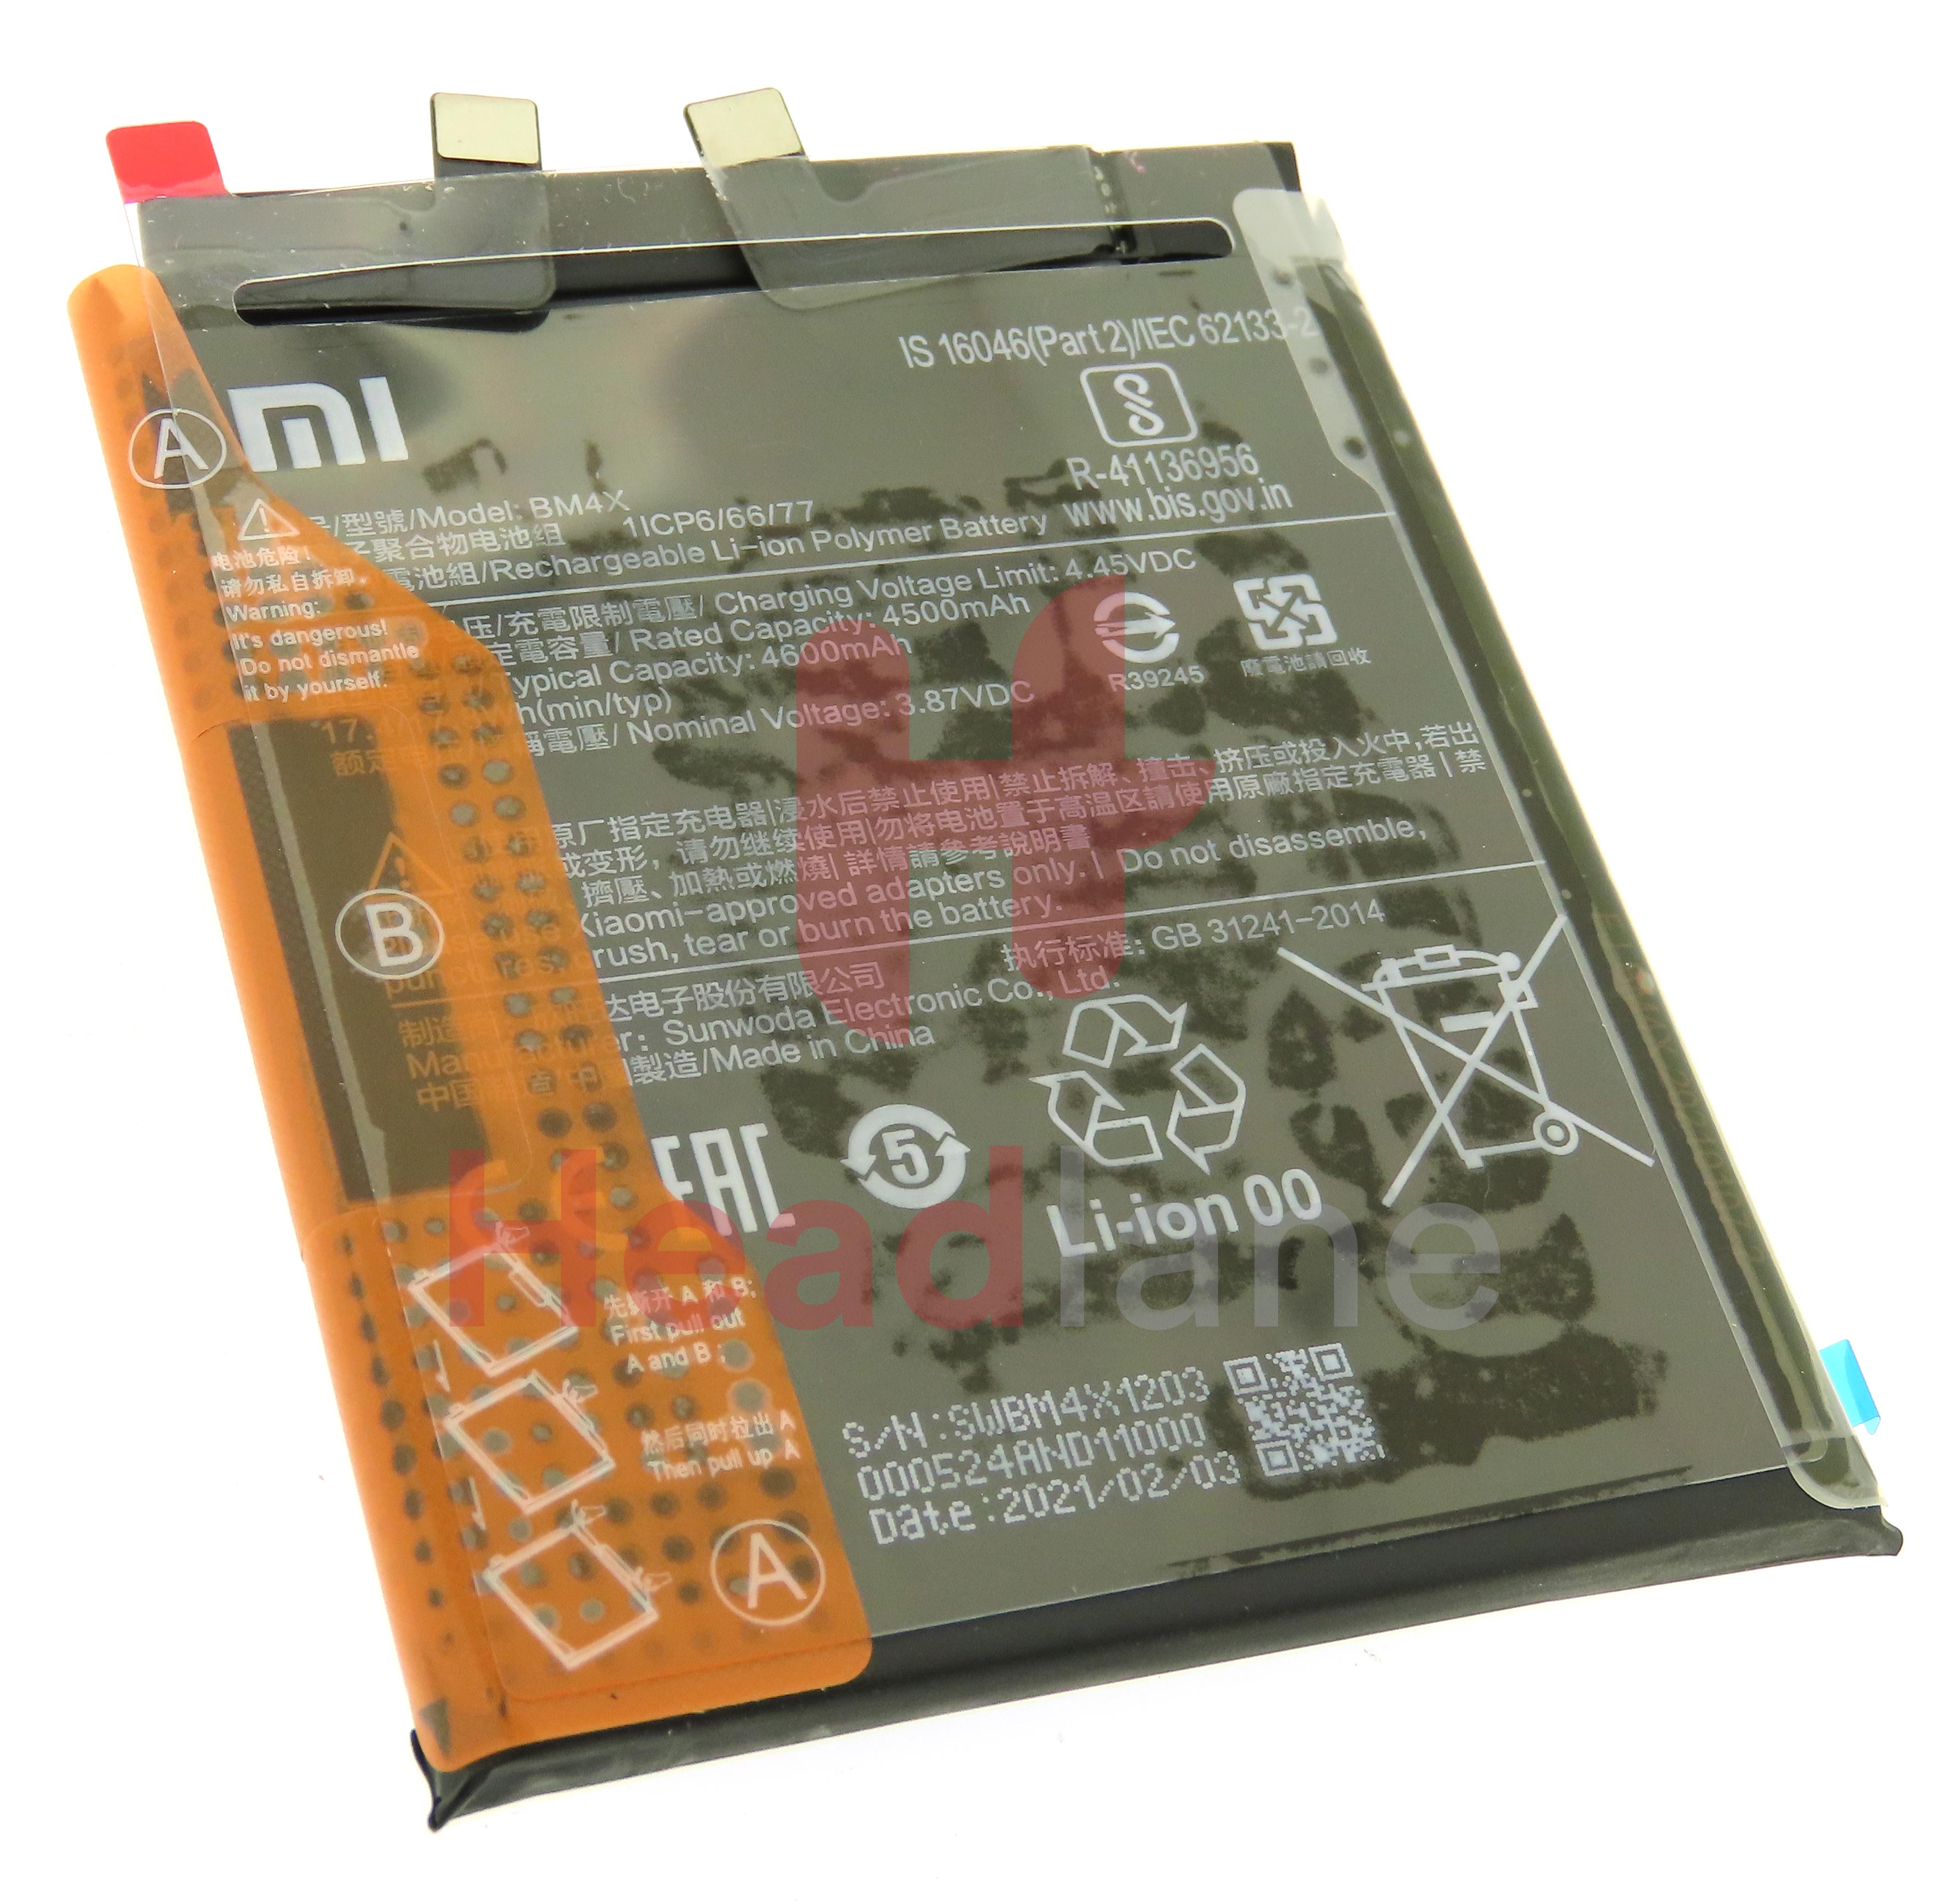 Xiaomi Mi 11 BM4X 4600mAh Internal Battery